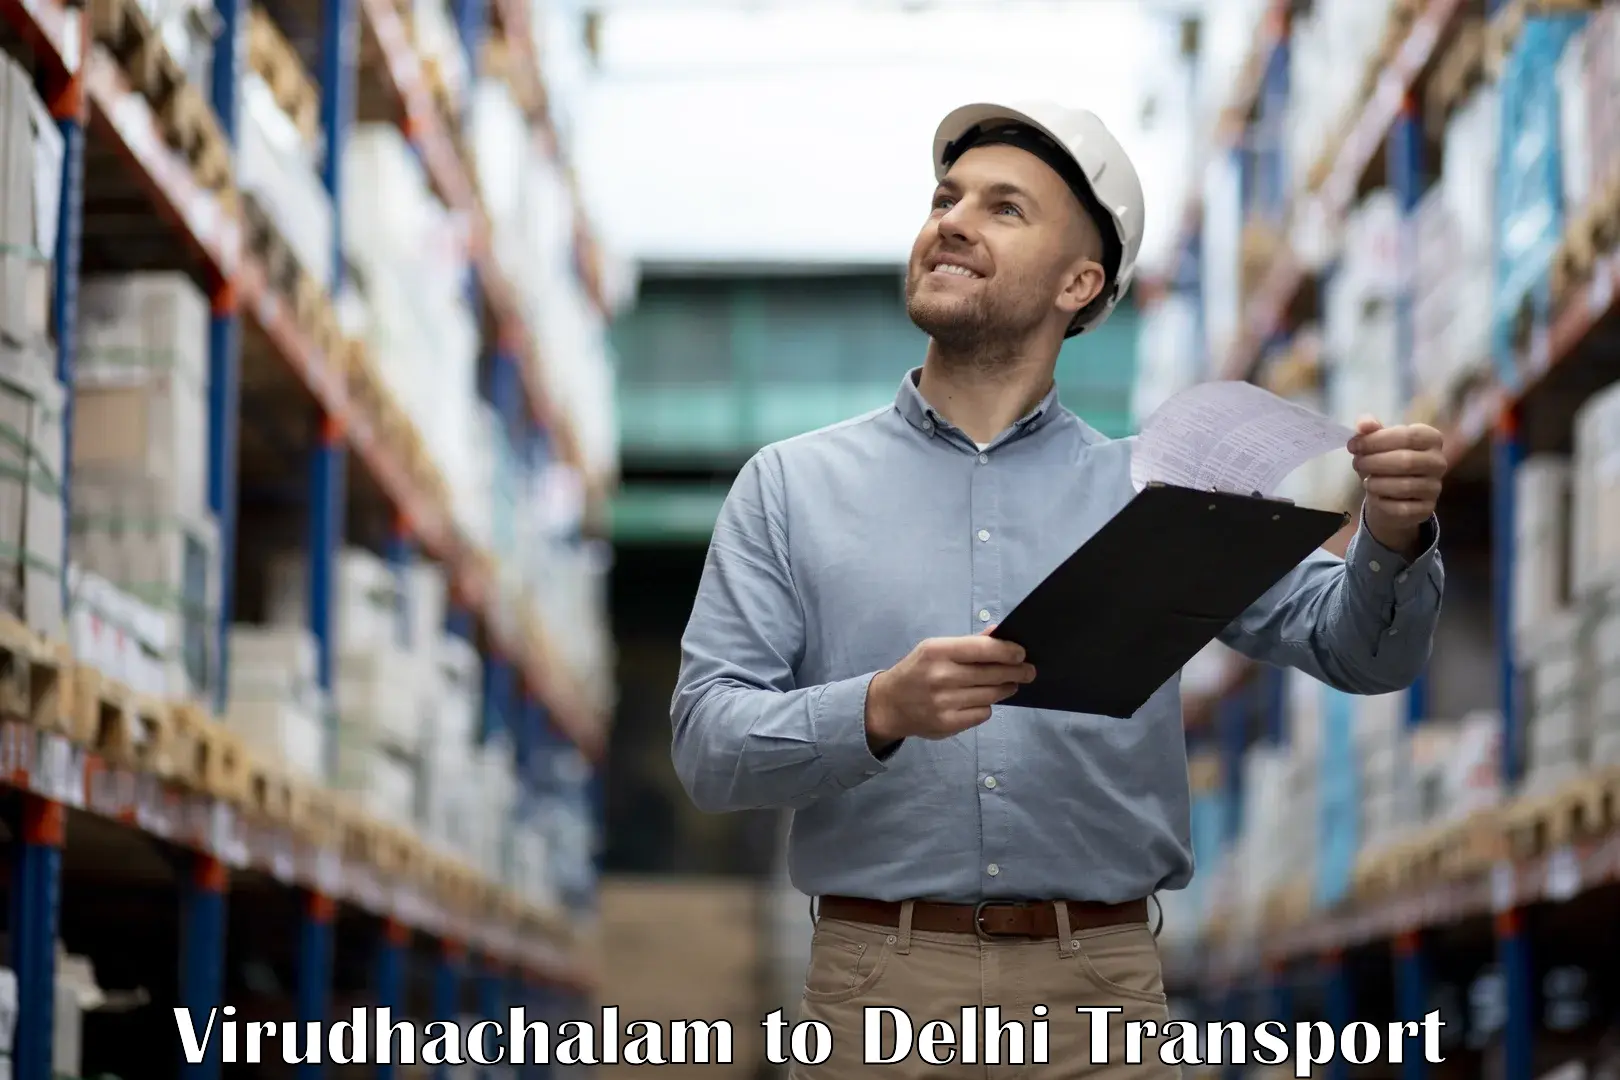 Online transport service Virudhachalam to IIT Delhi